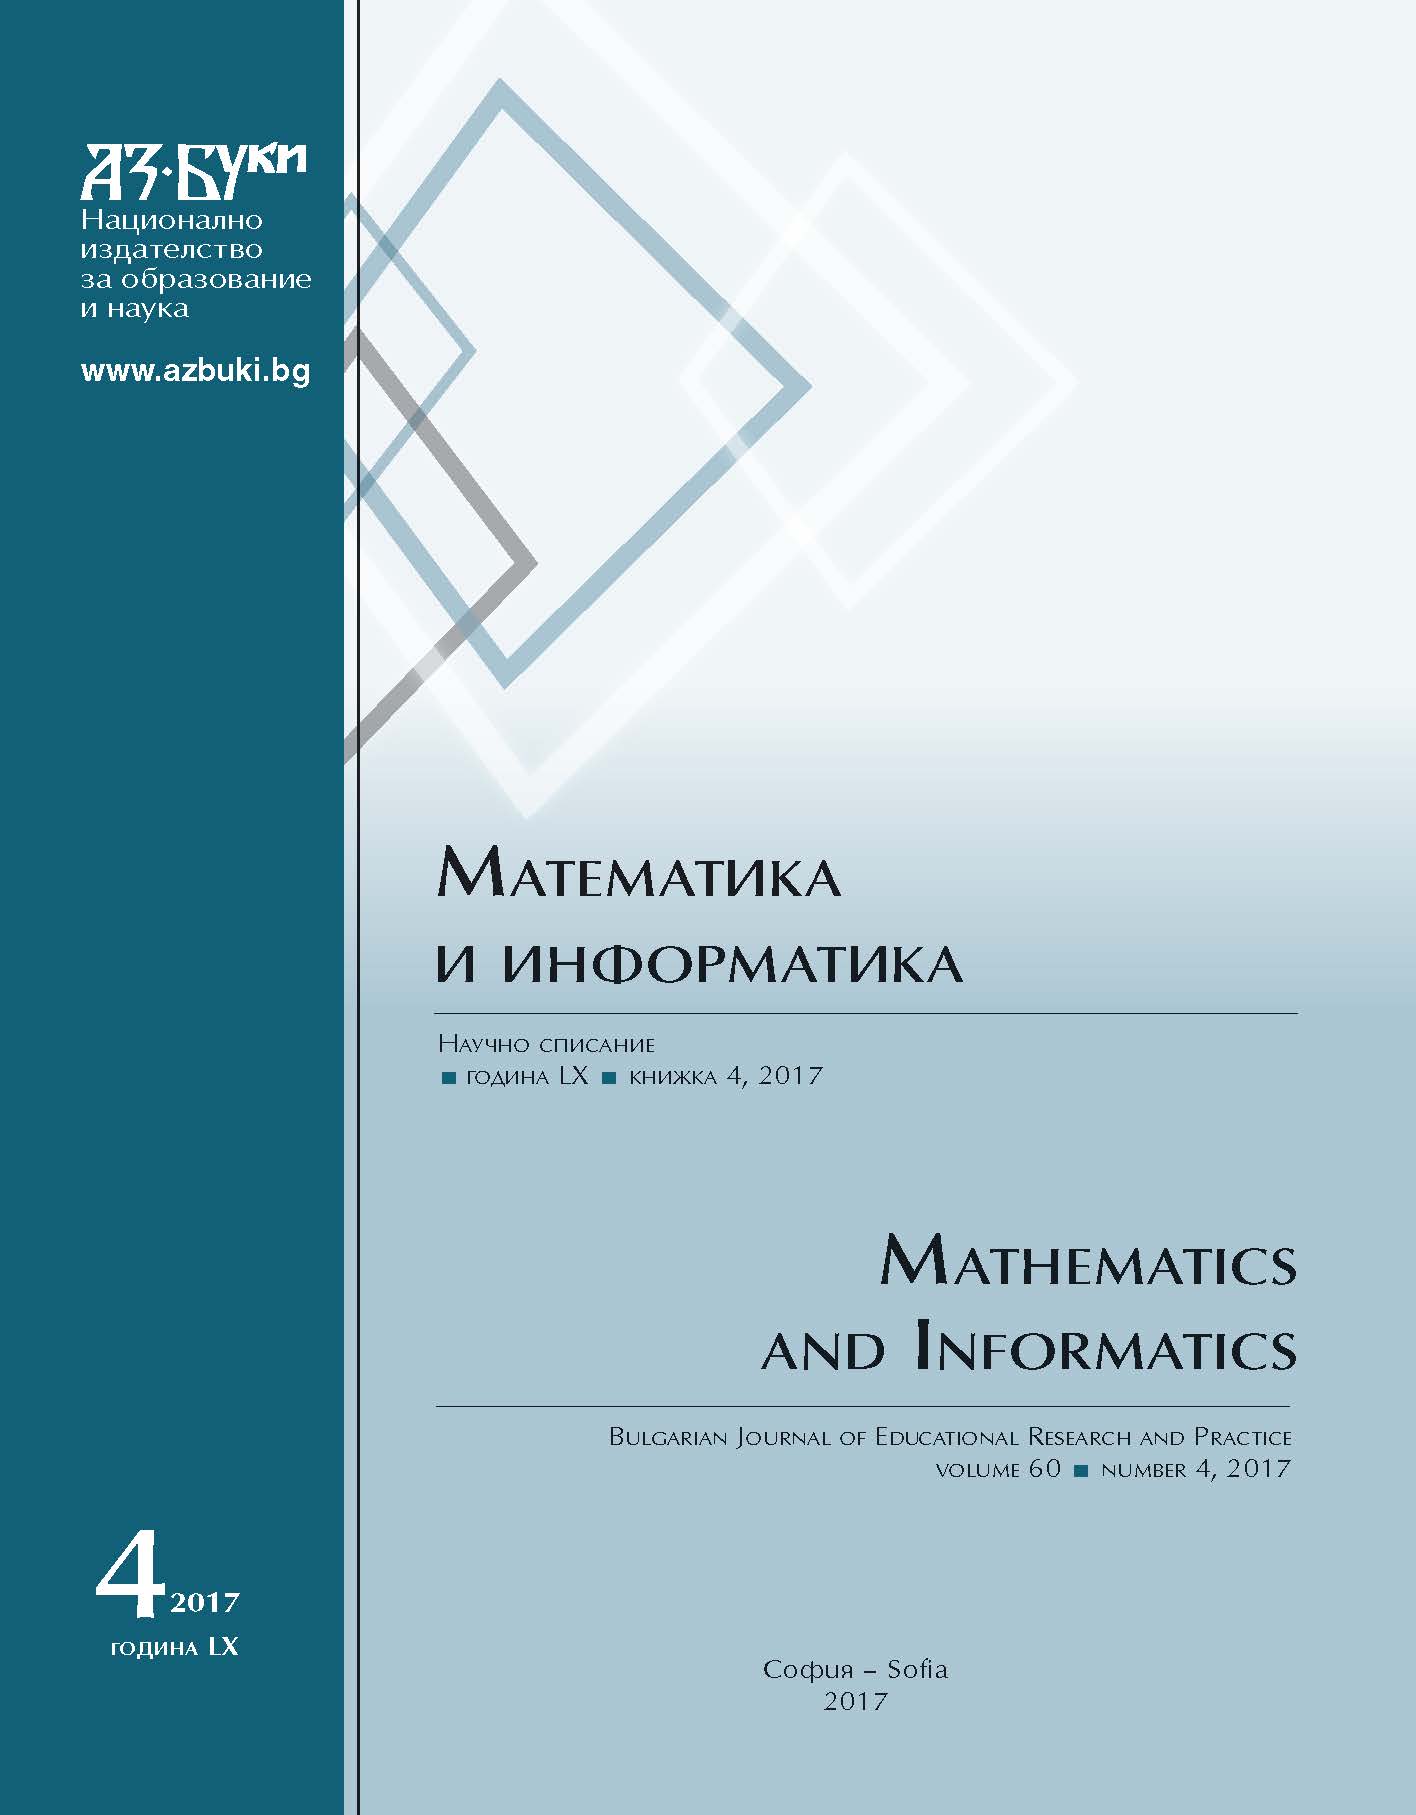 Приложение на връзката между средно аритметично и средно геометрично за рационално доказване на някои неравенства